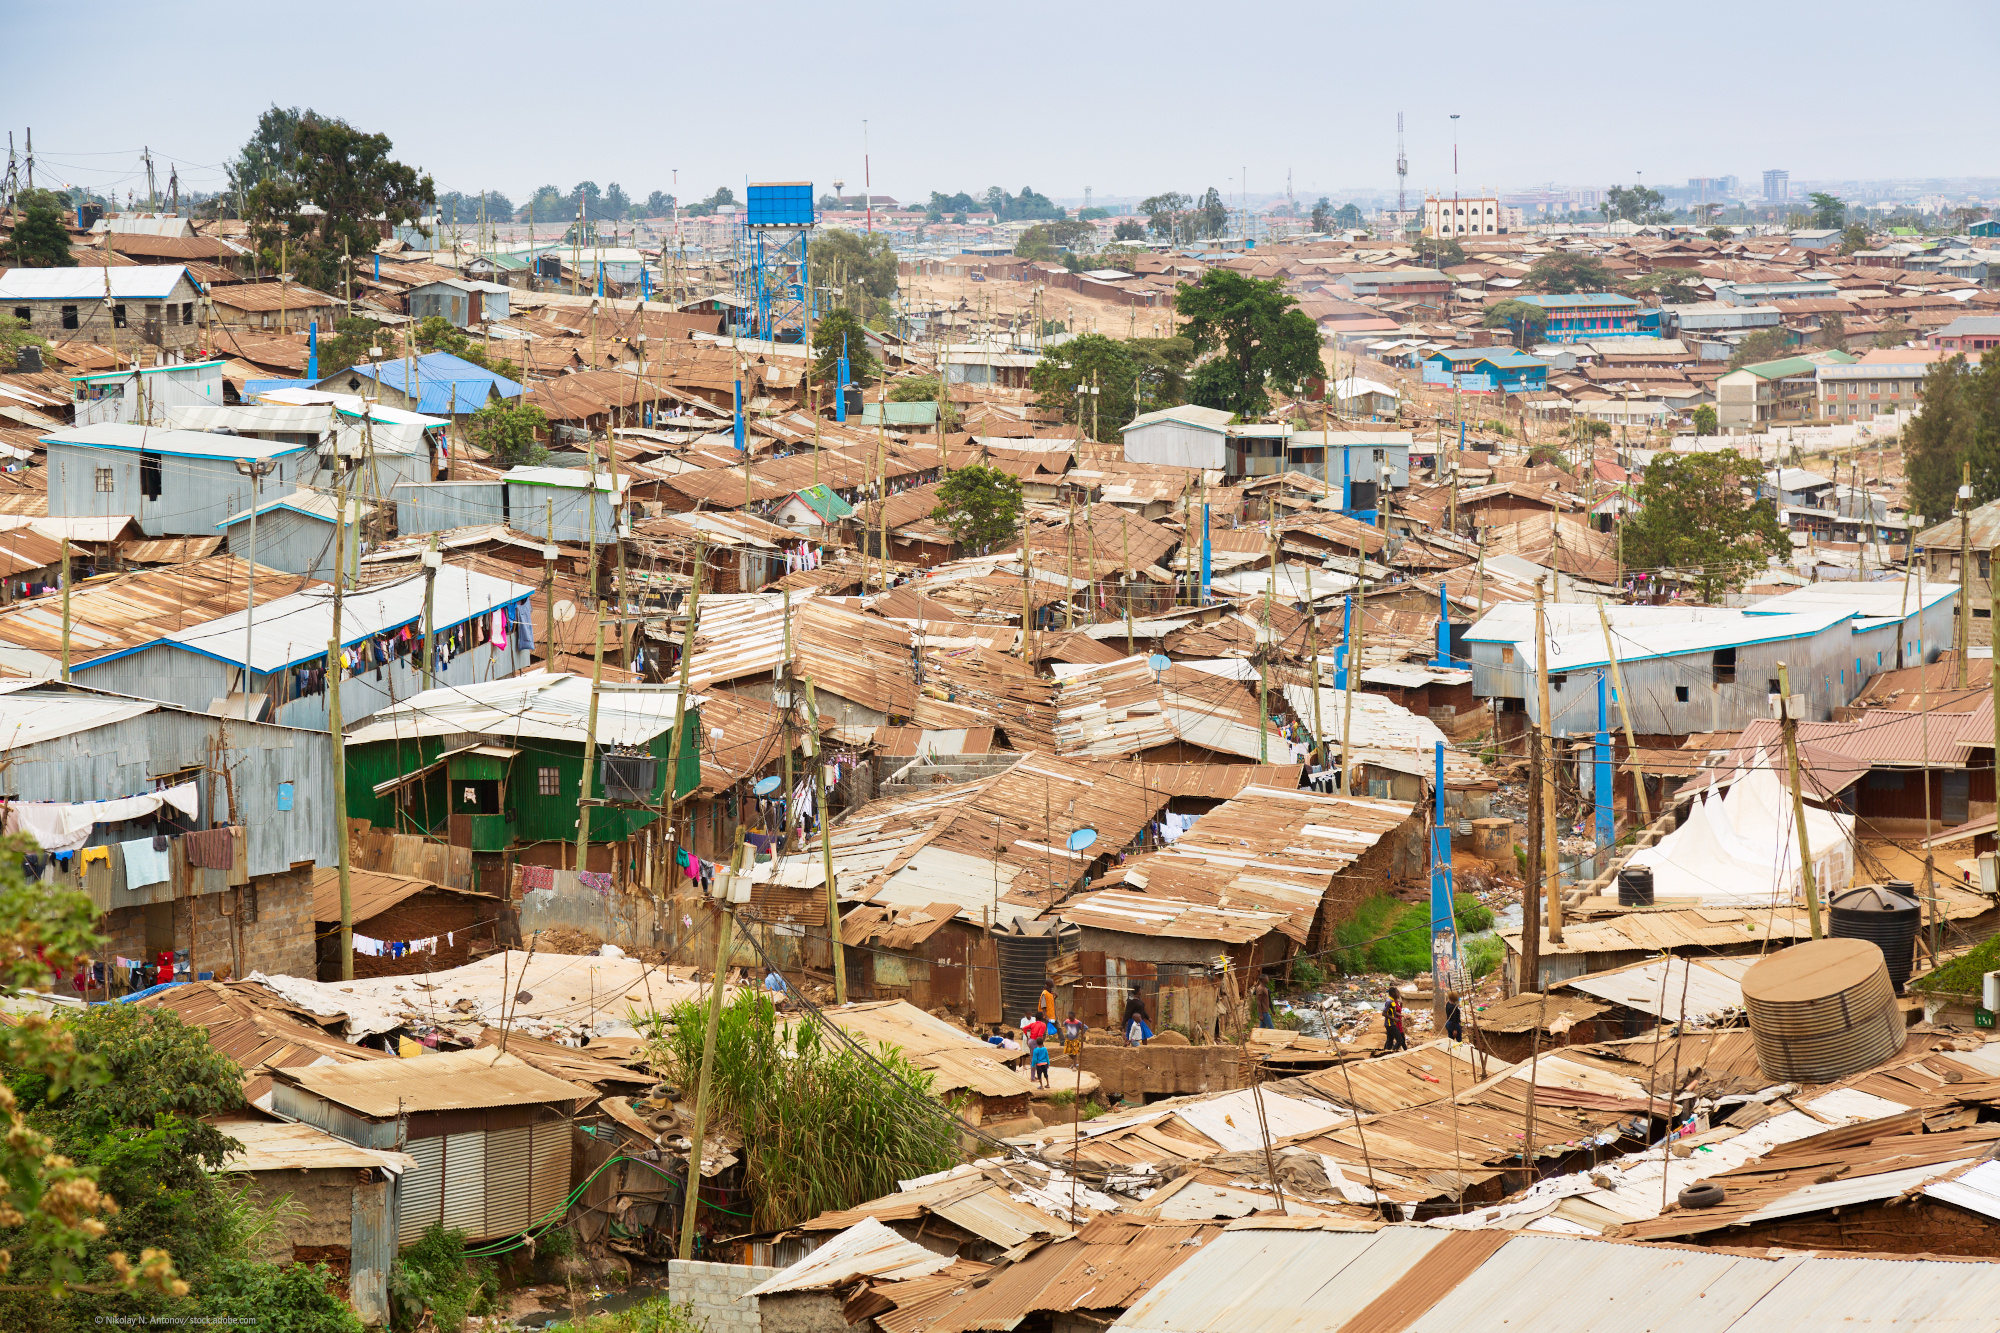 Viele Wellblechhütten in einem Slum in Nairobi